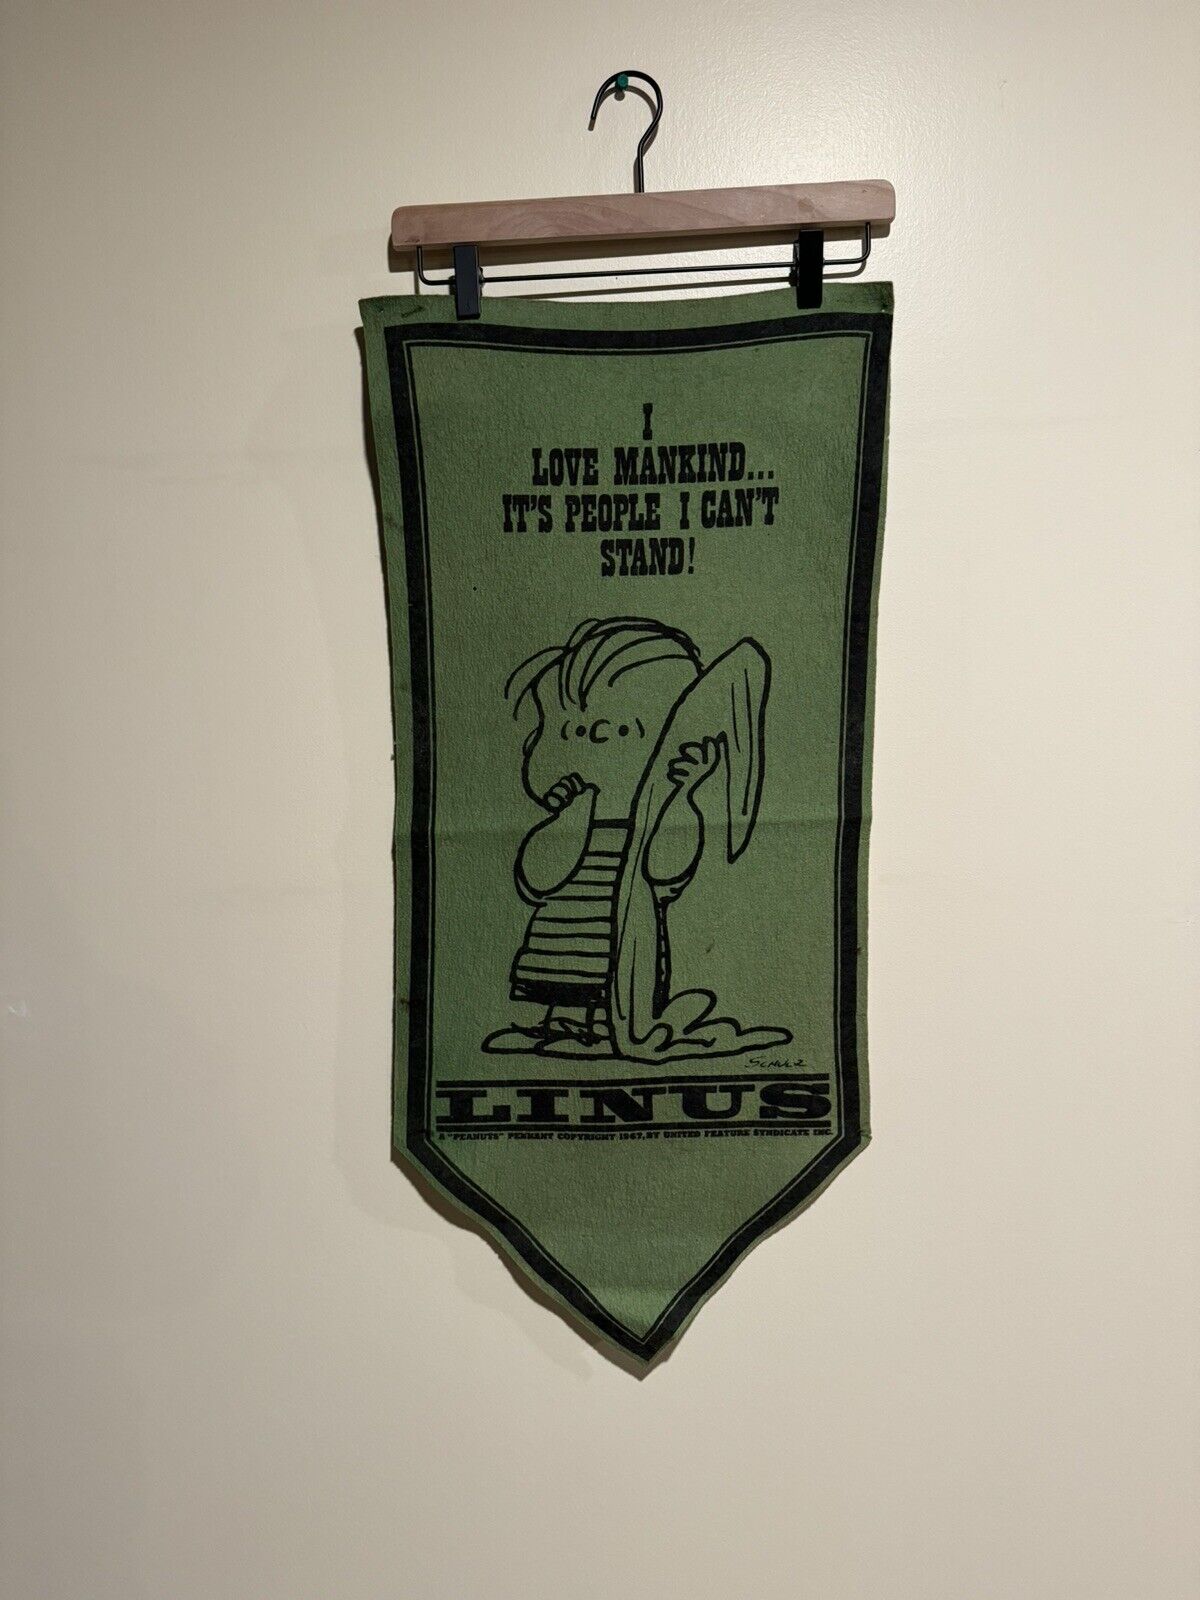 Vintage 1960s Peanuts Linus I Love Mankind Green Felt Banner Pennant